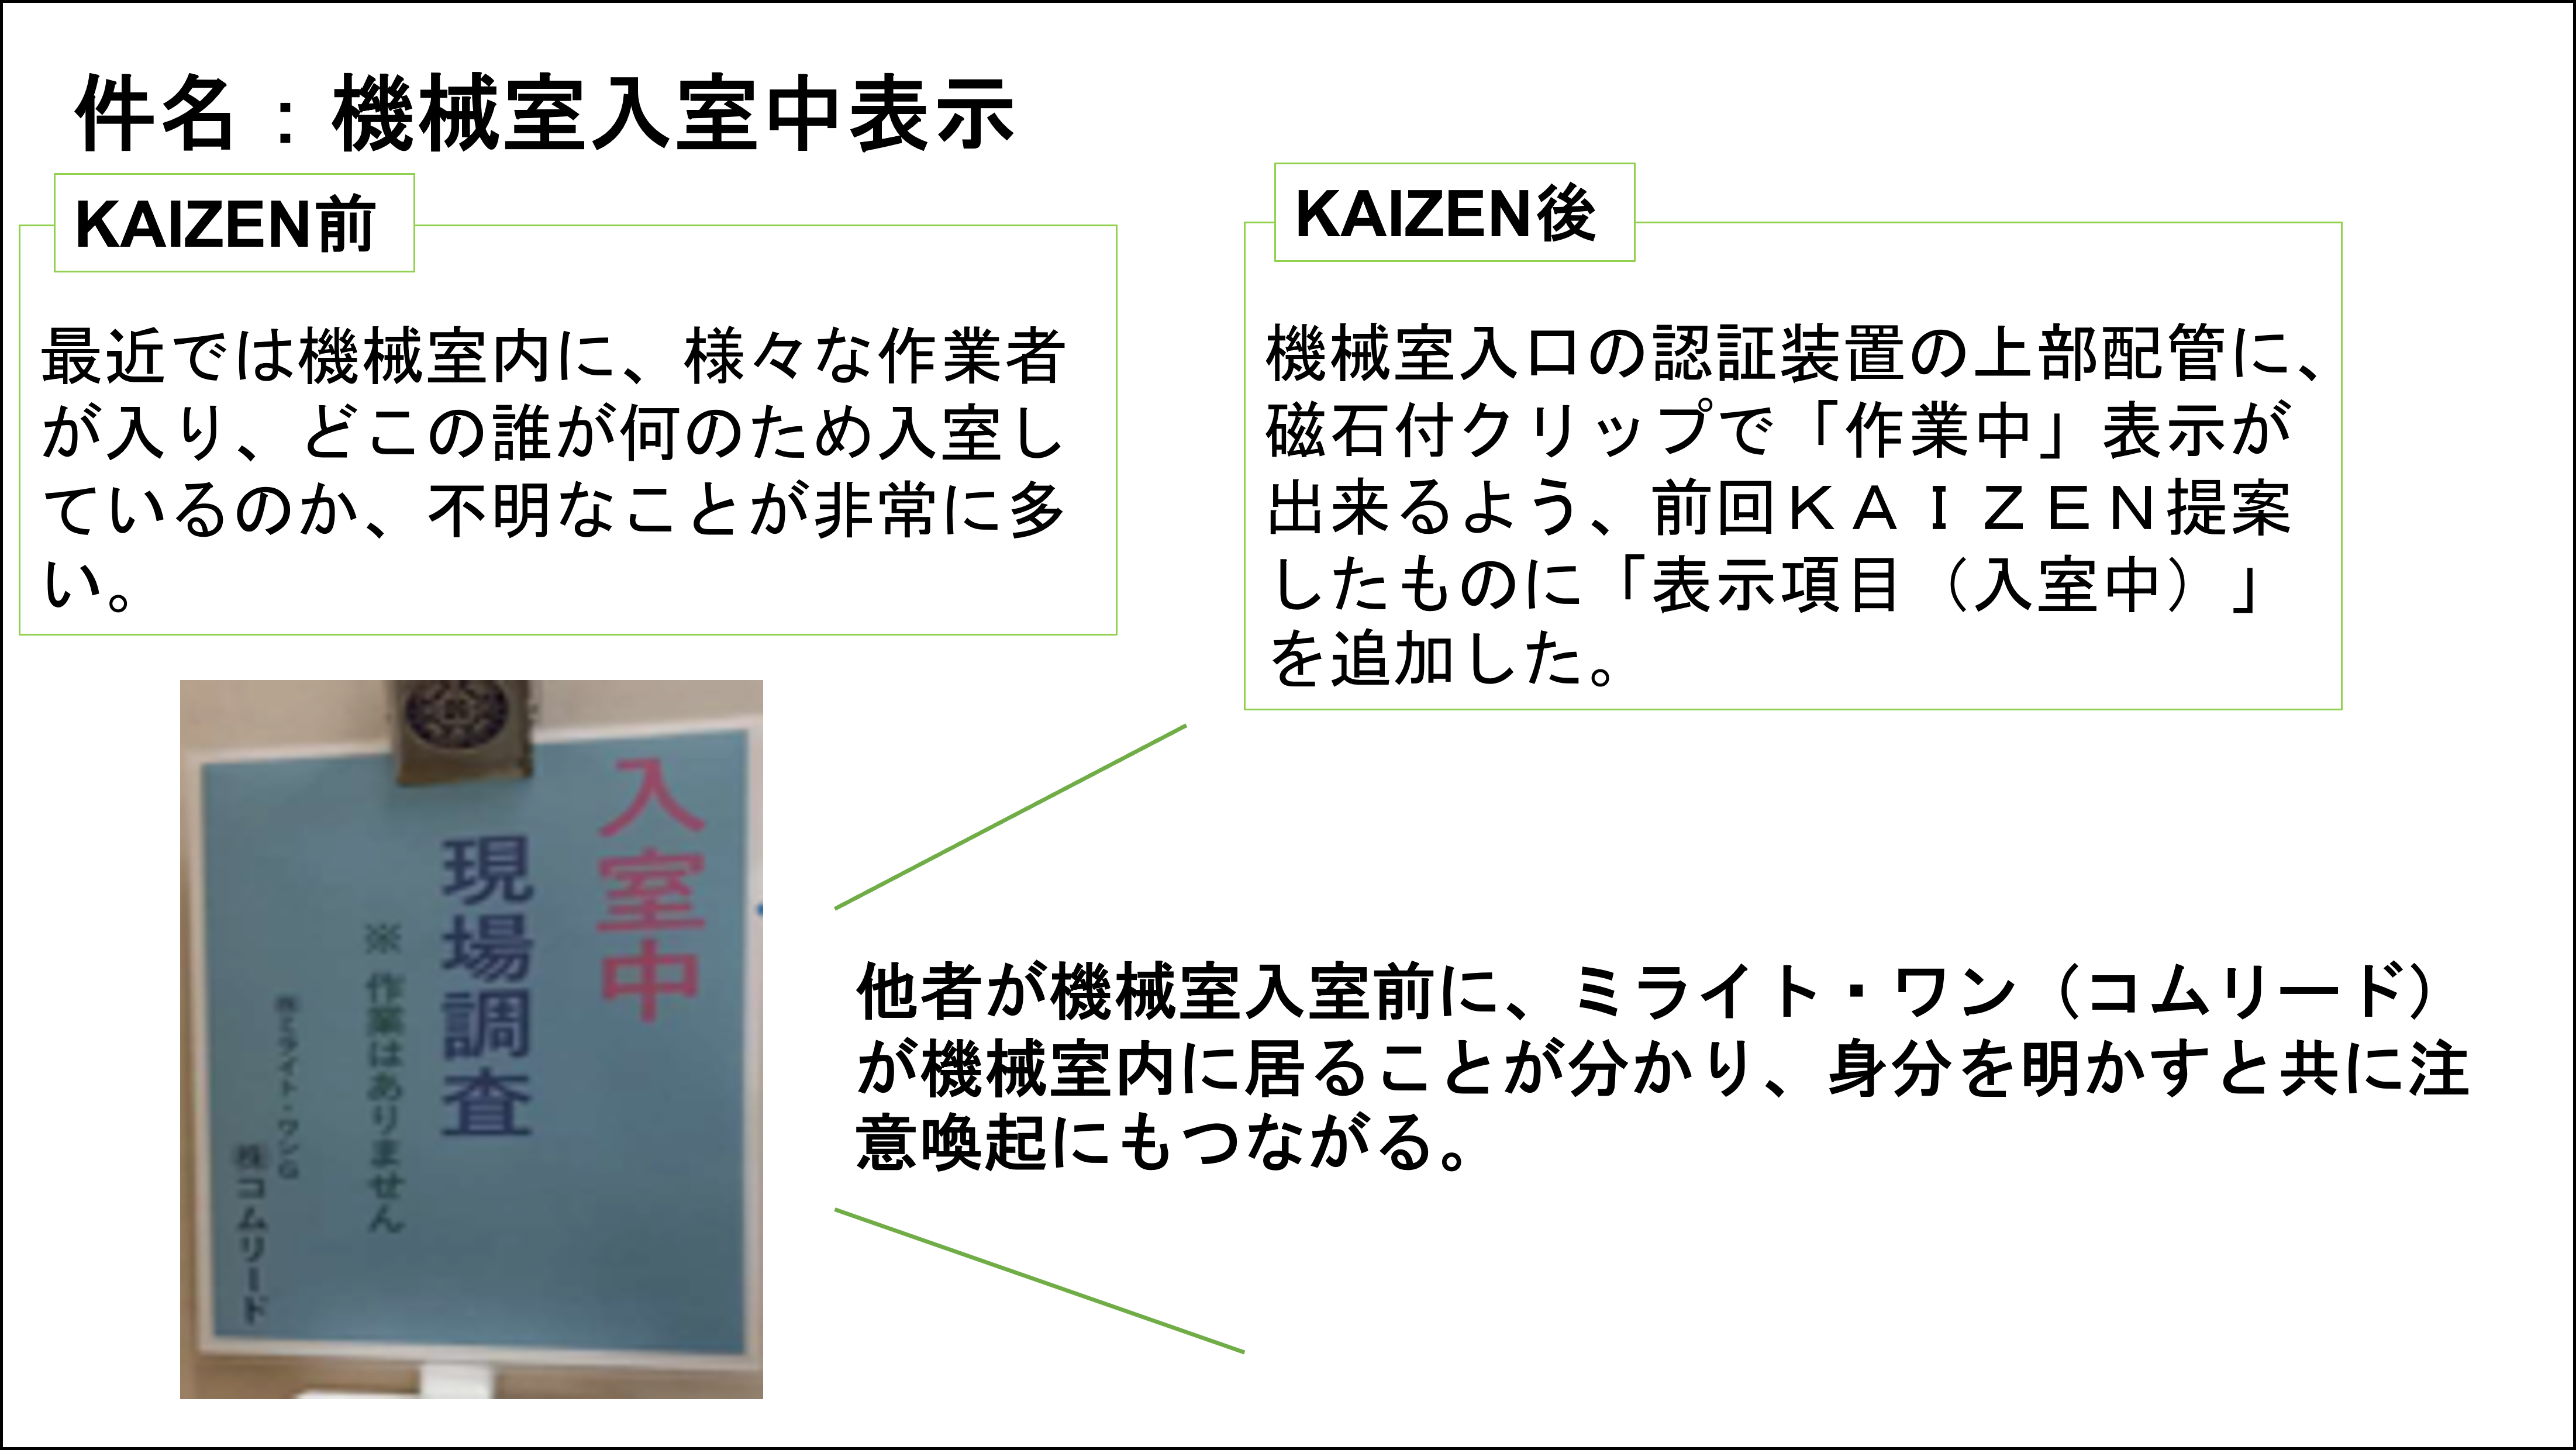 【KAIZEN】いいね提案_9月推しのKAIZEN②.png